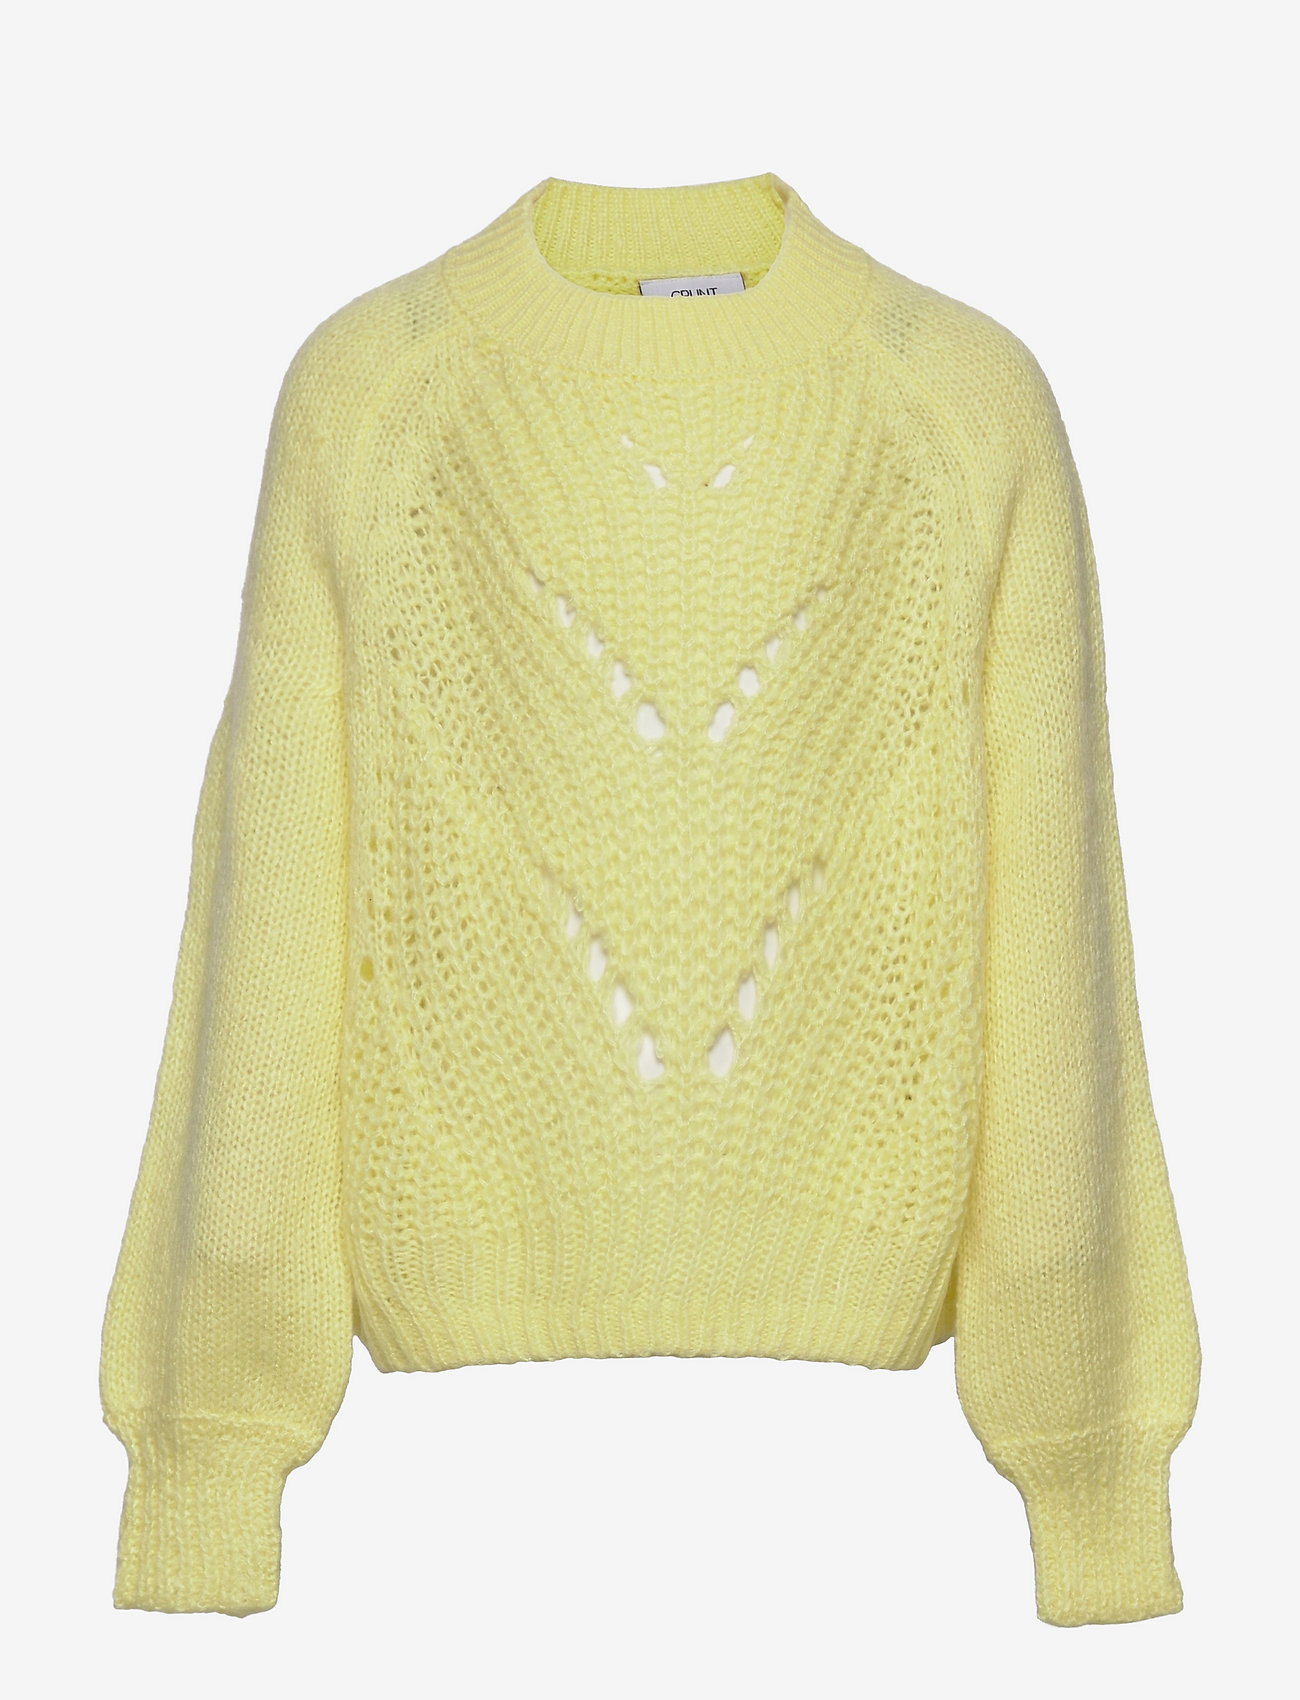 Grunt - Mall Knit - trøjer - yellow - 0